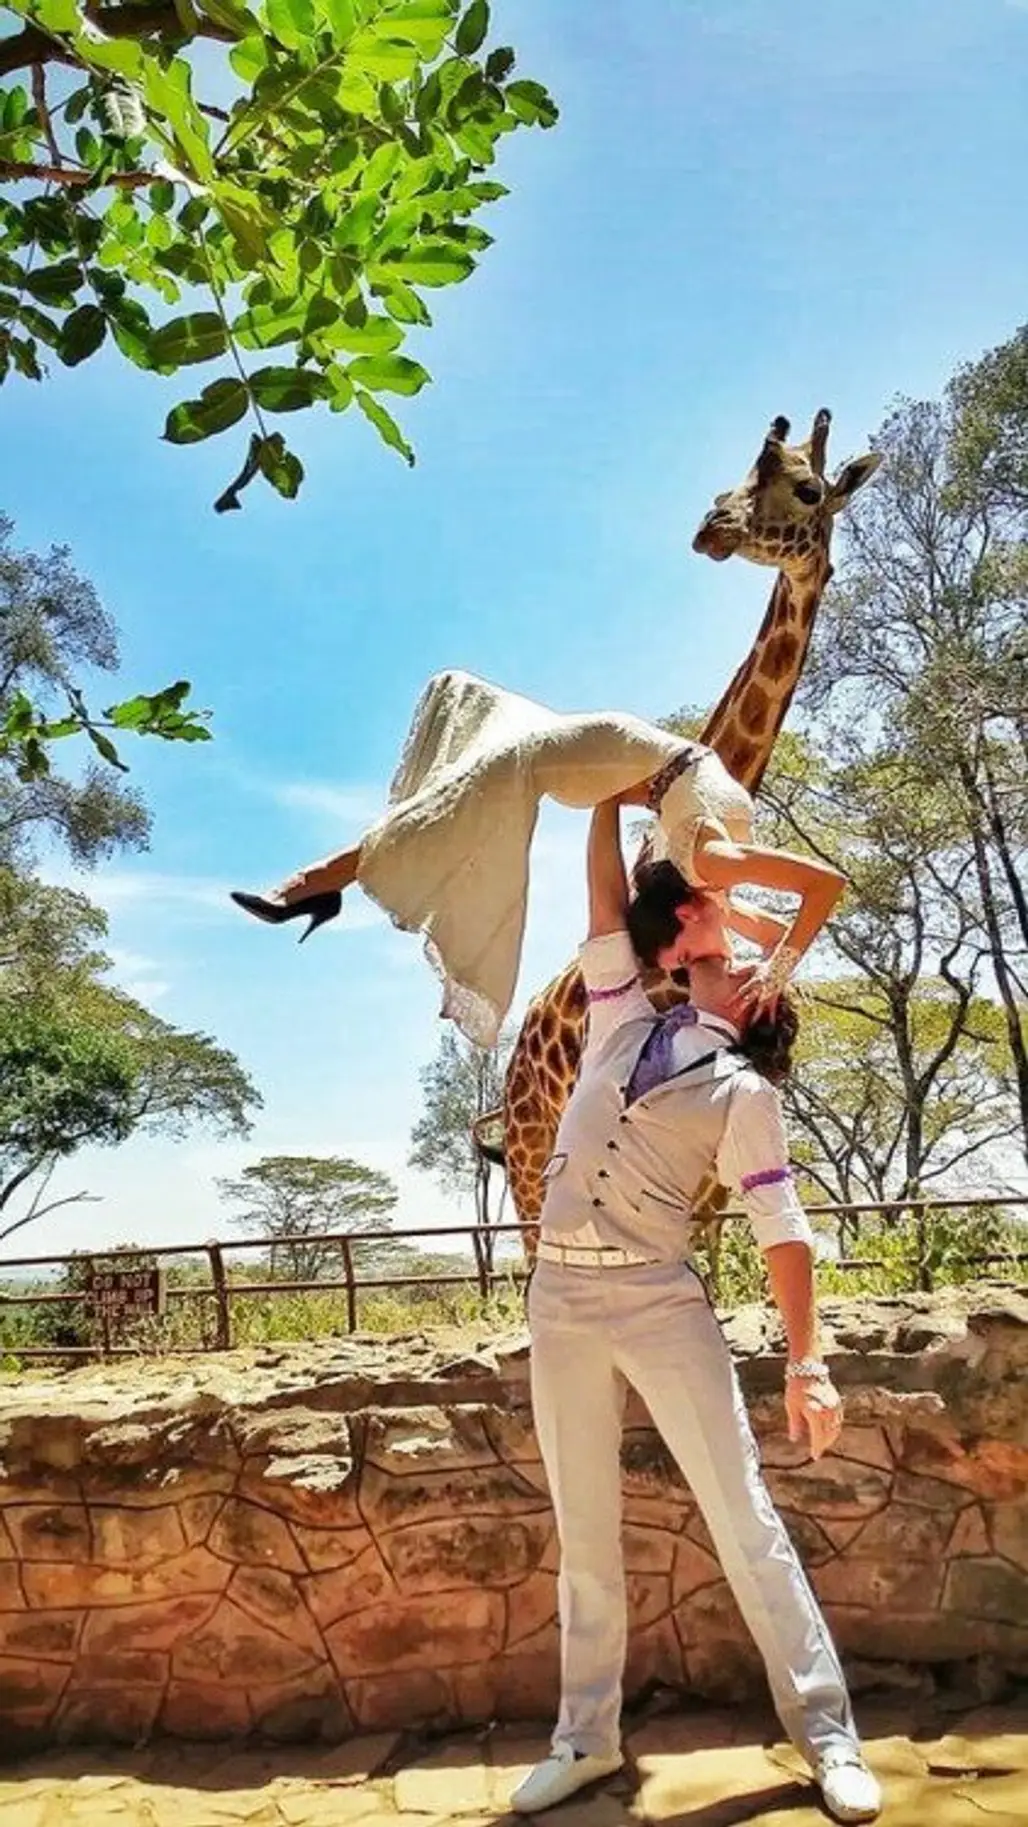 A Long-necked Witness at the Giraffe Center in Nairobi, Kenya